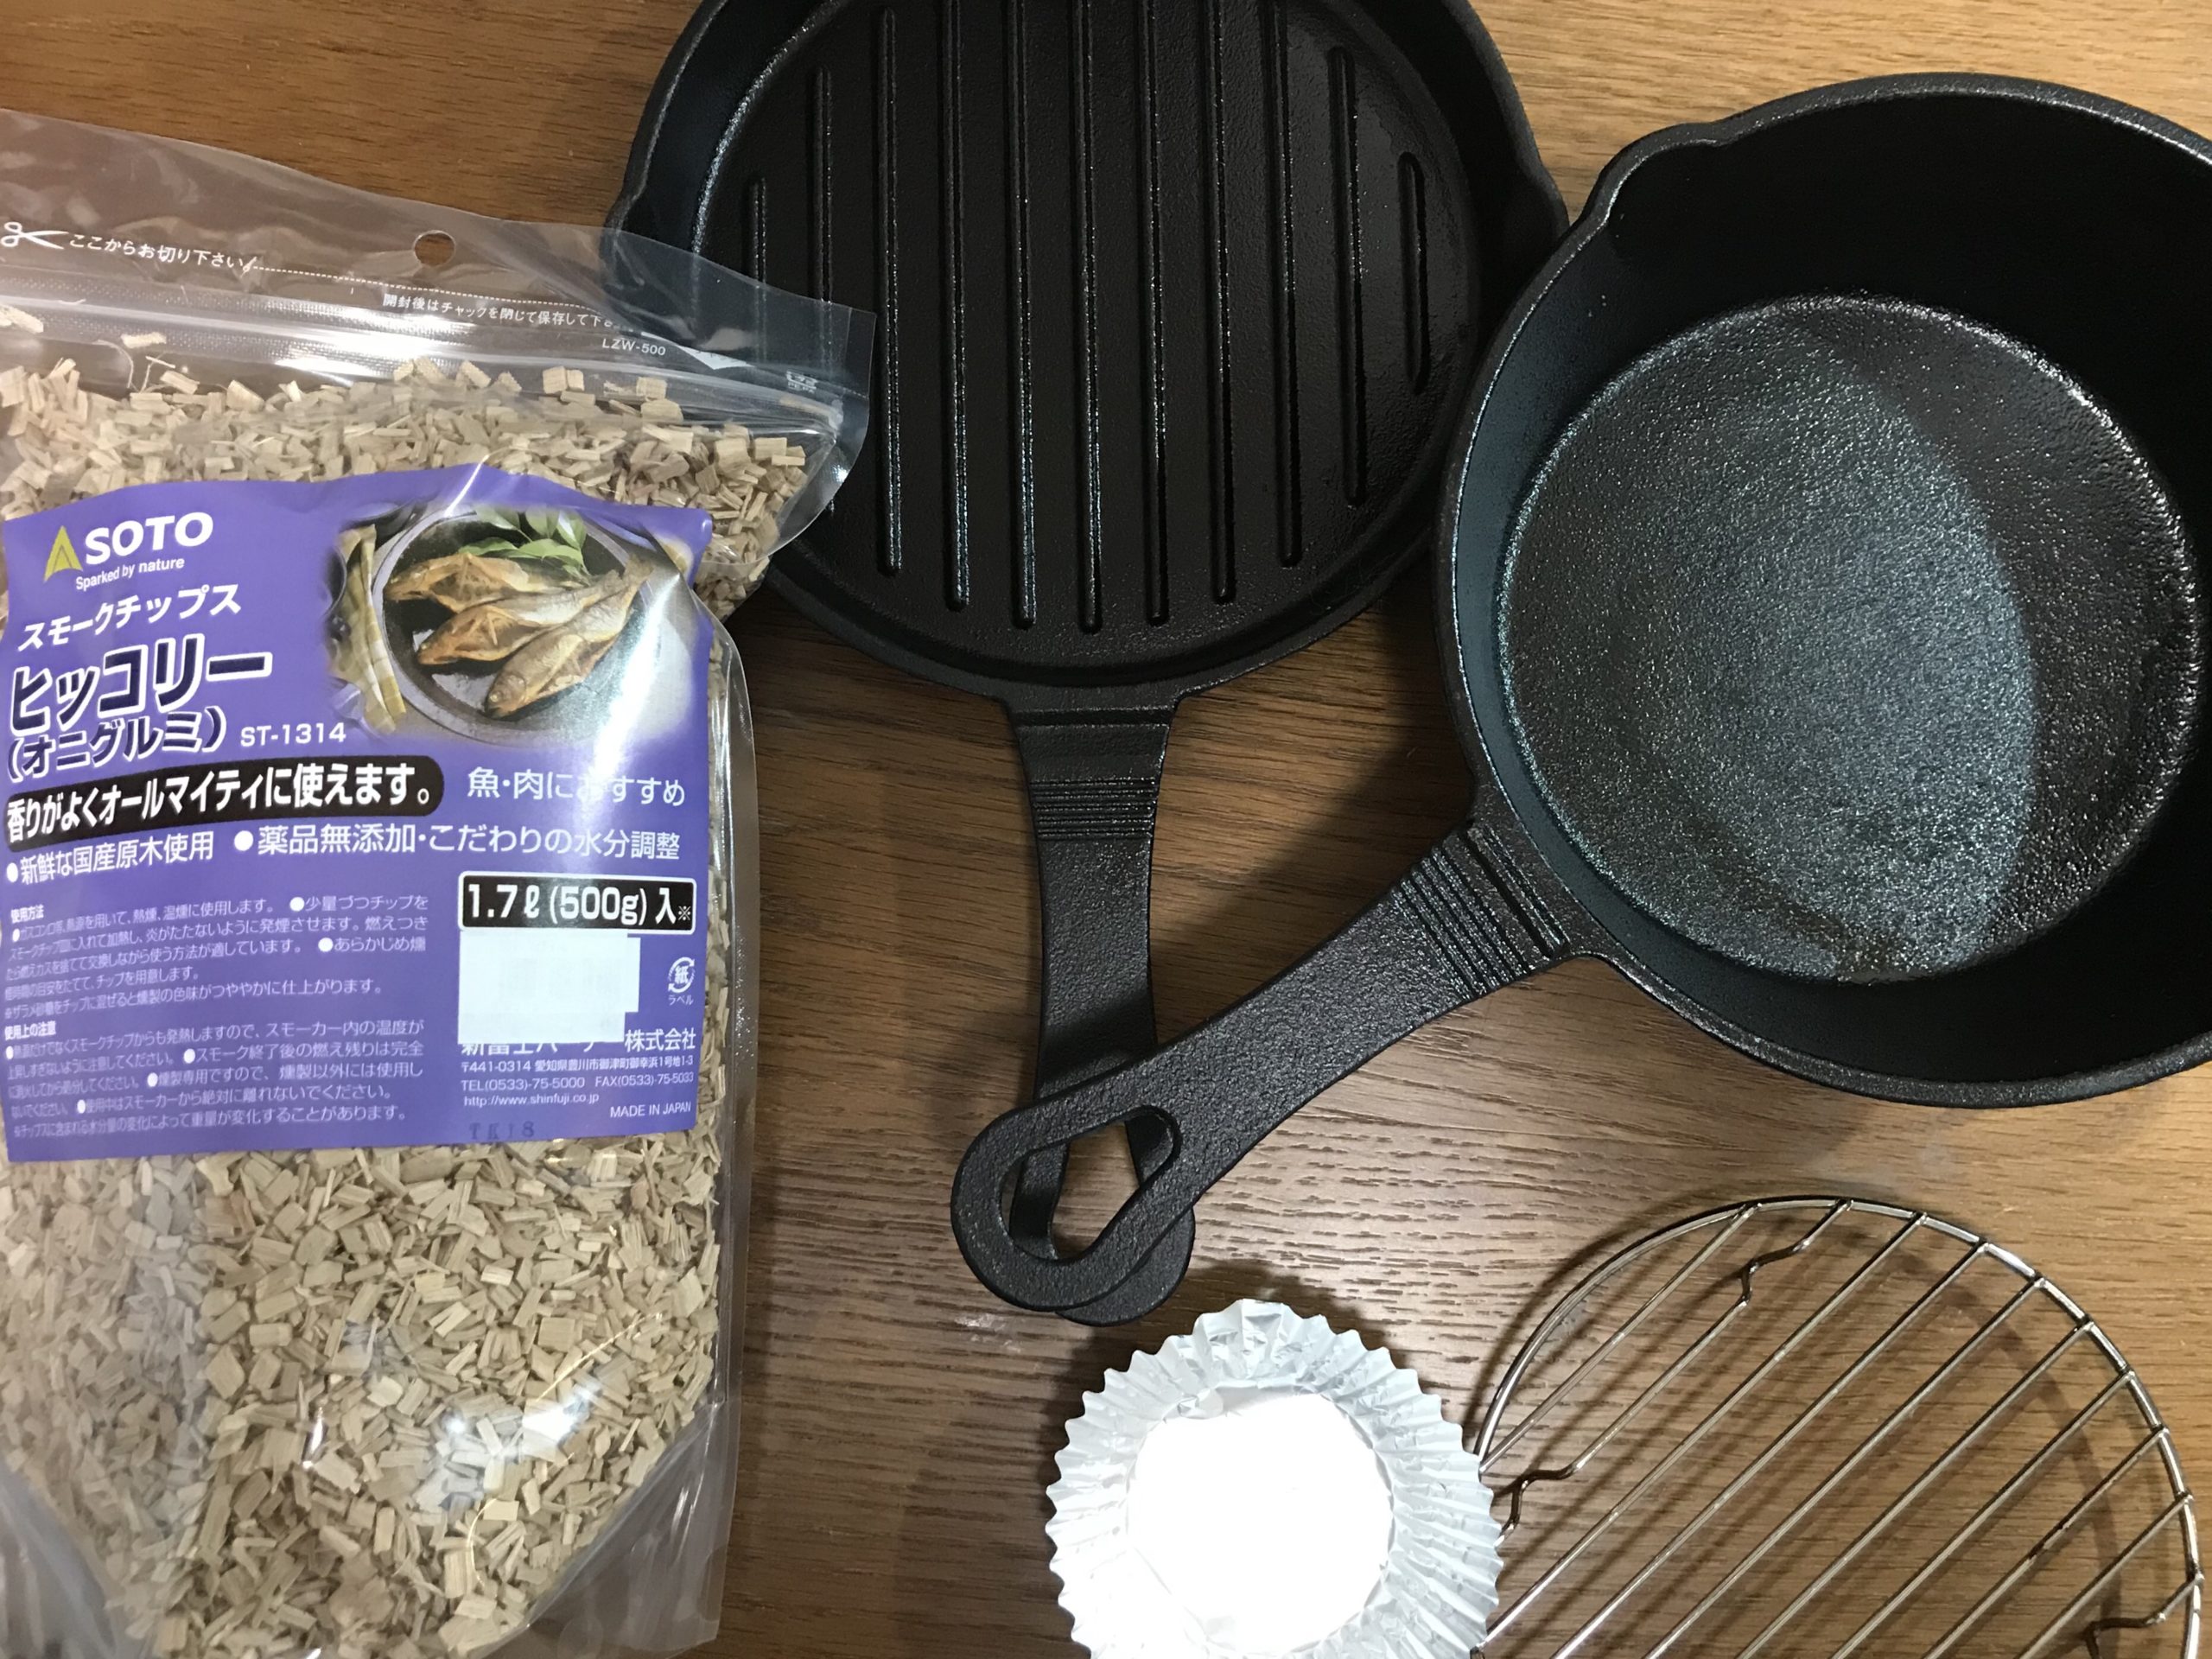 燻製の作り方 イシガキのスキレットオーブンを使った簡単燻製を解説 燻製を自宅でも簡単に